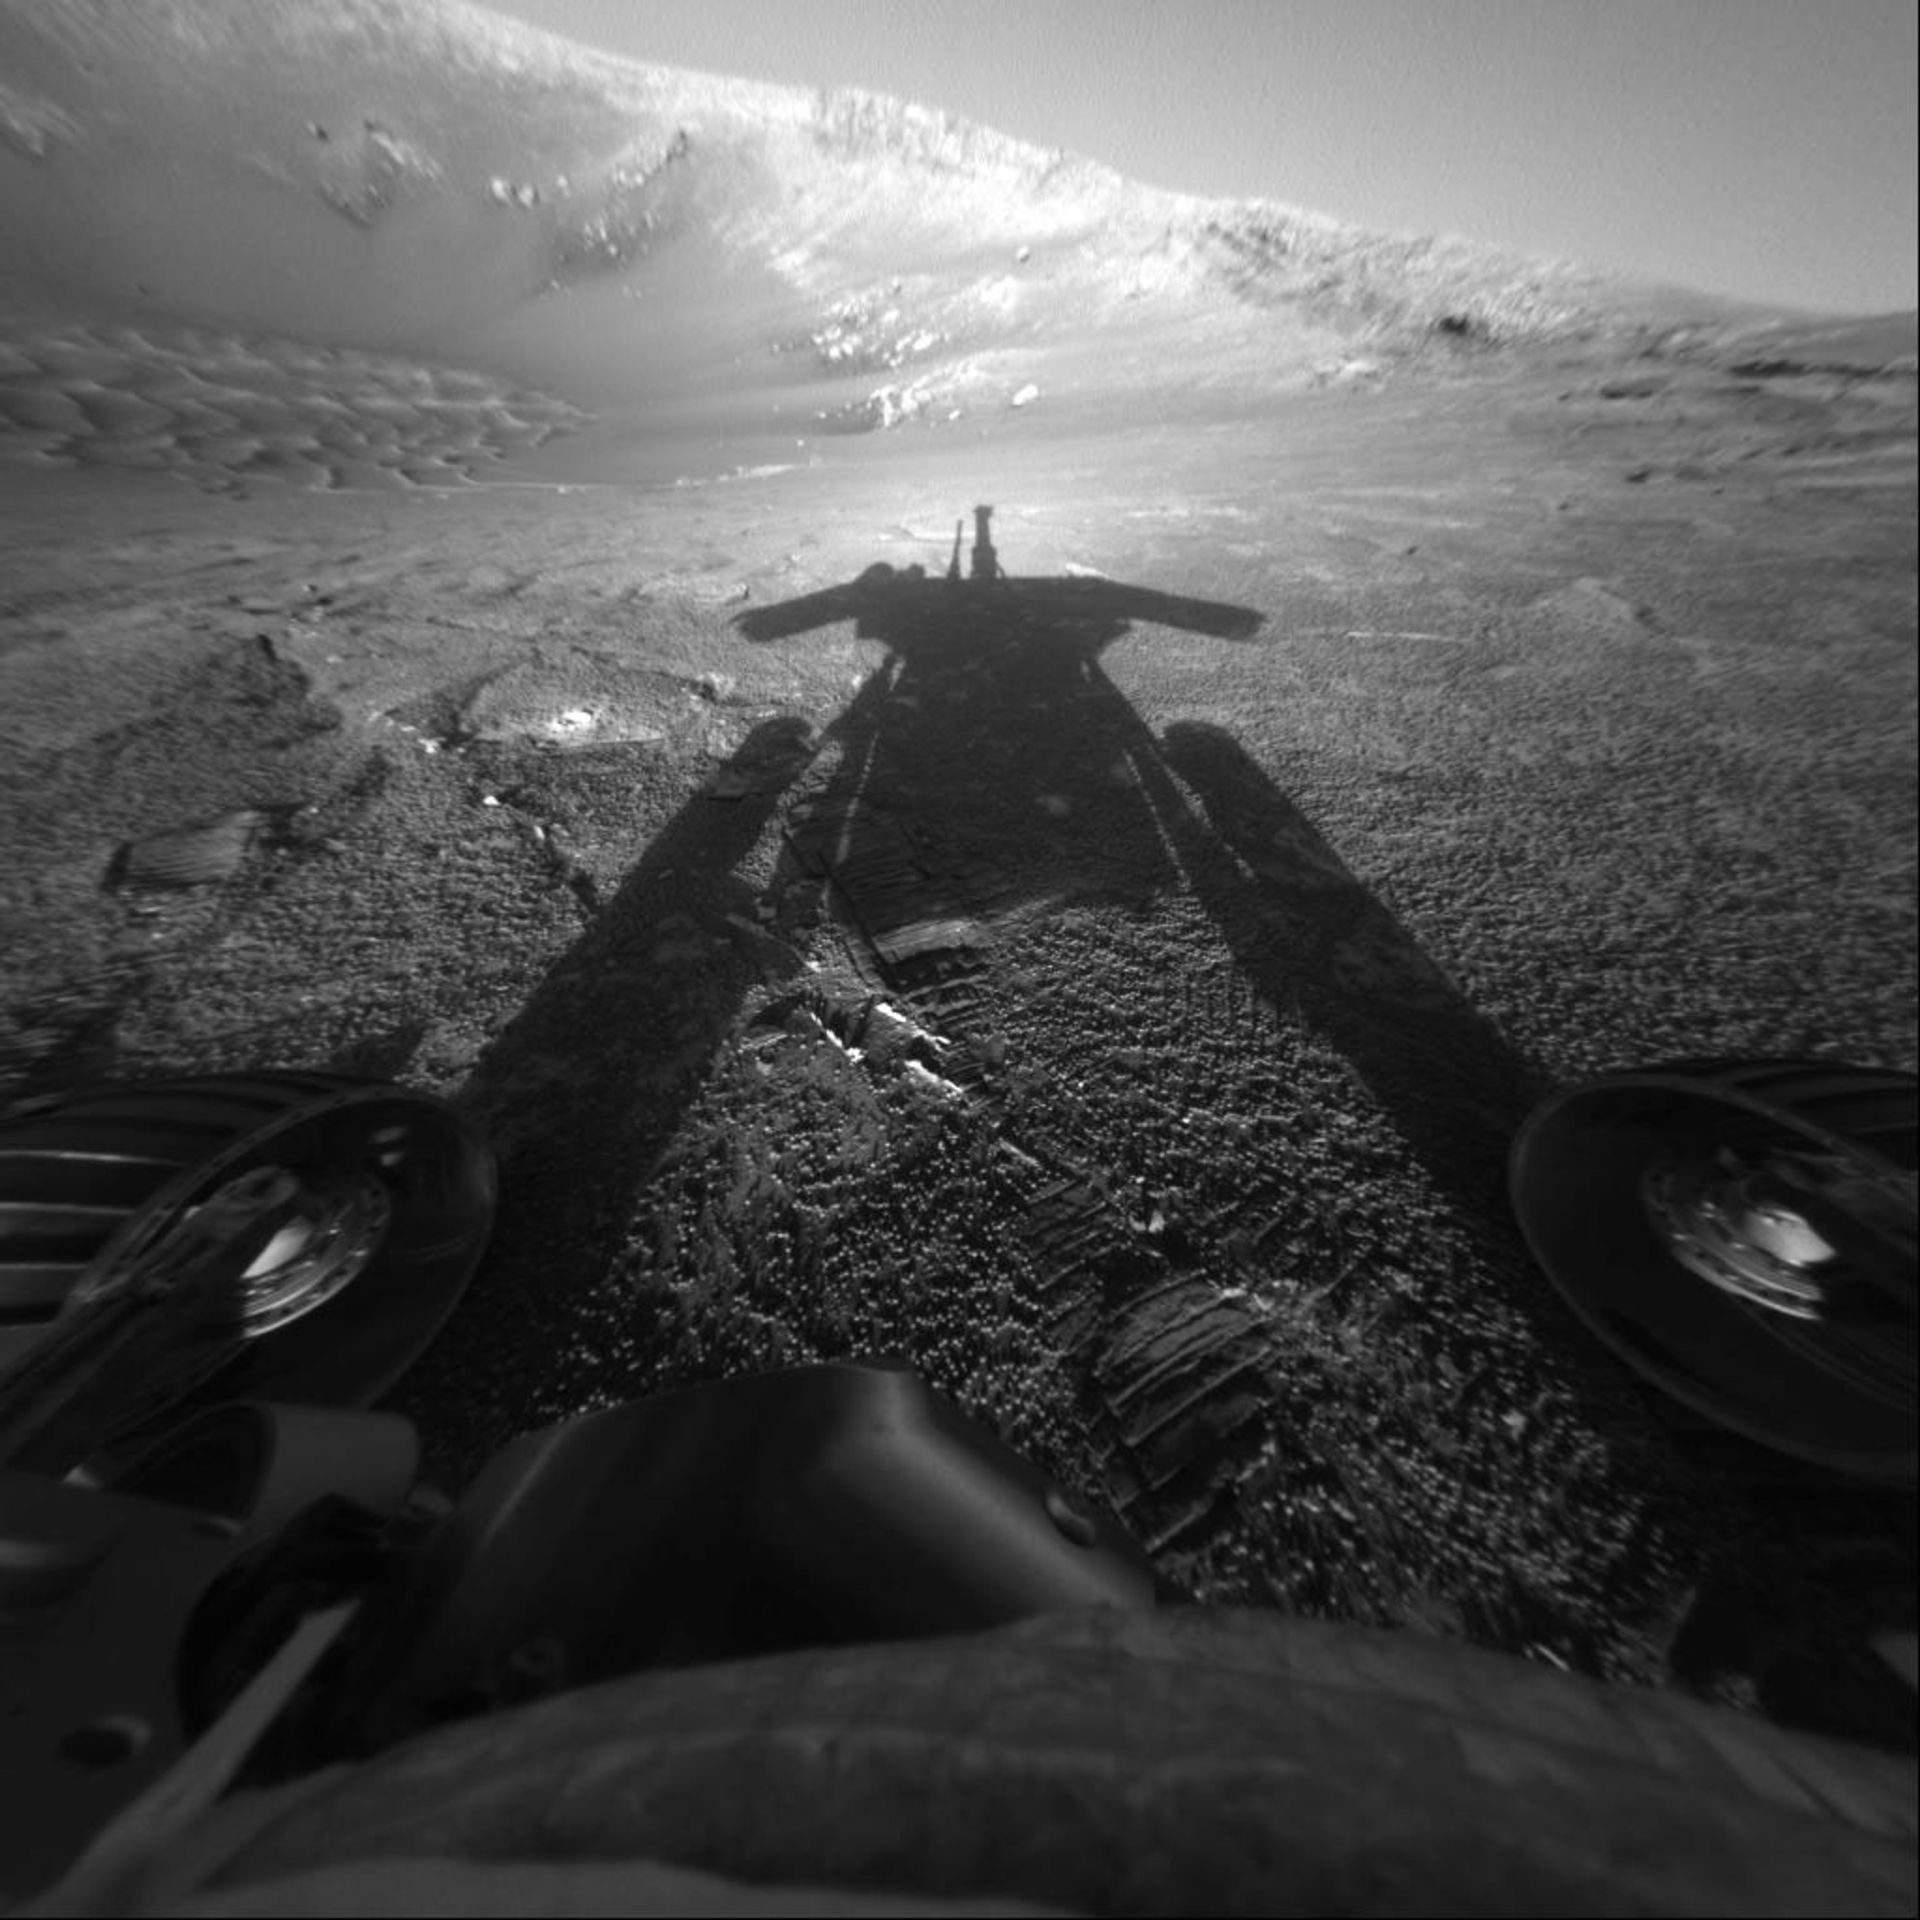 سایه آپورچونیتی روی مریخ از نگاه خودش